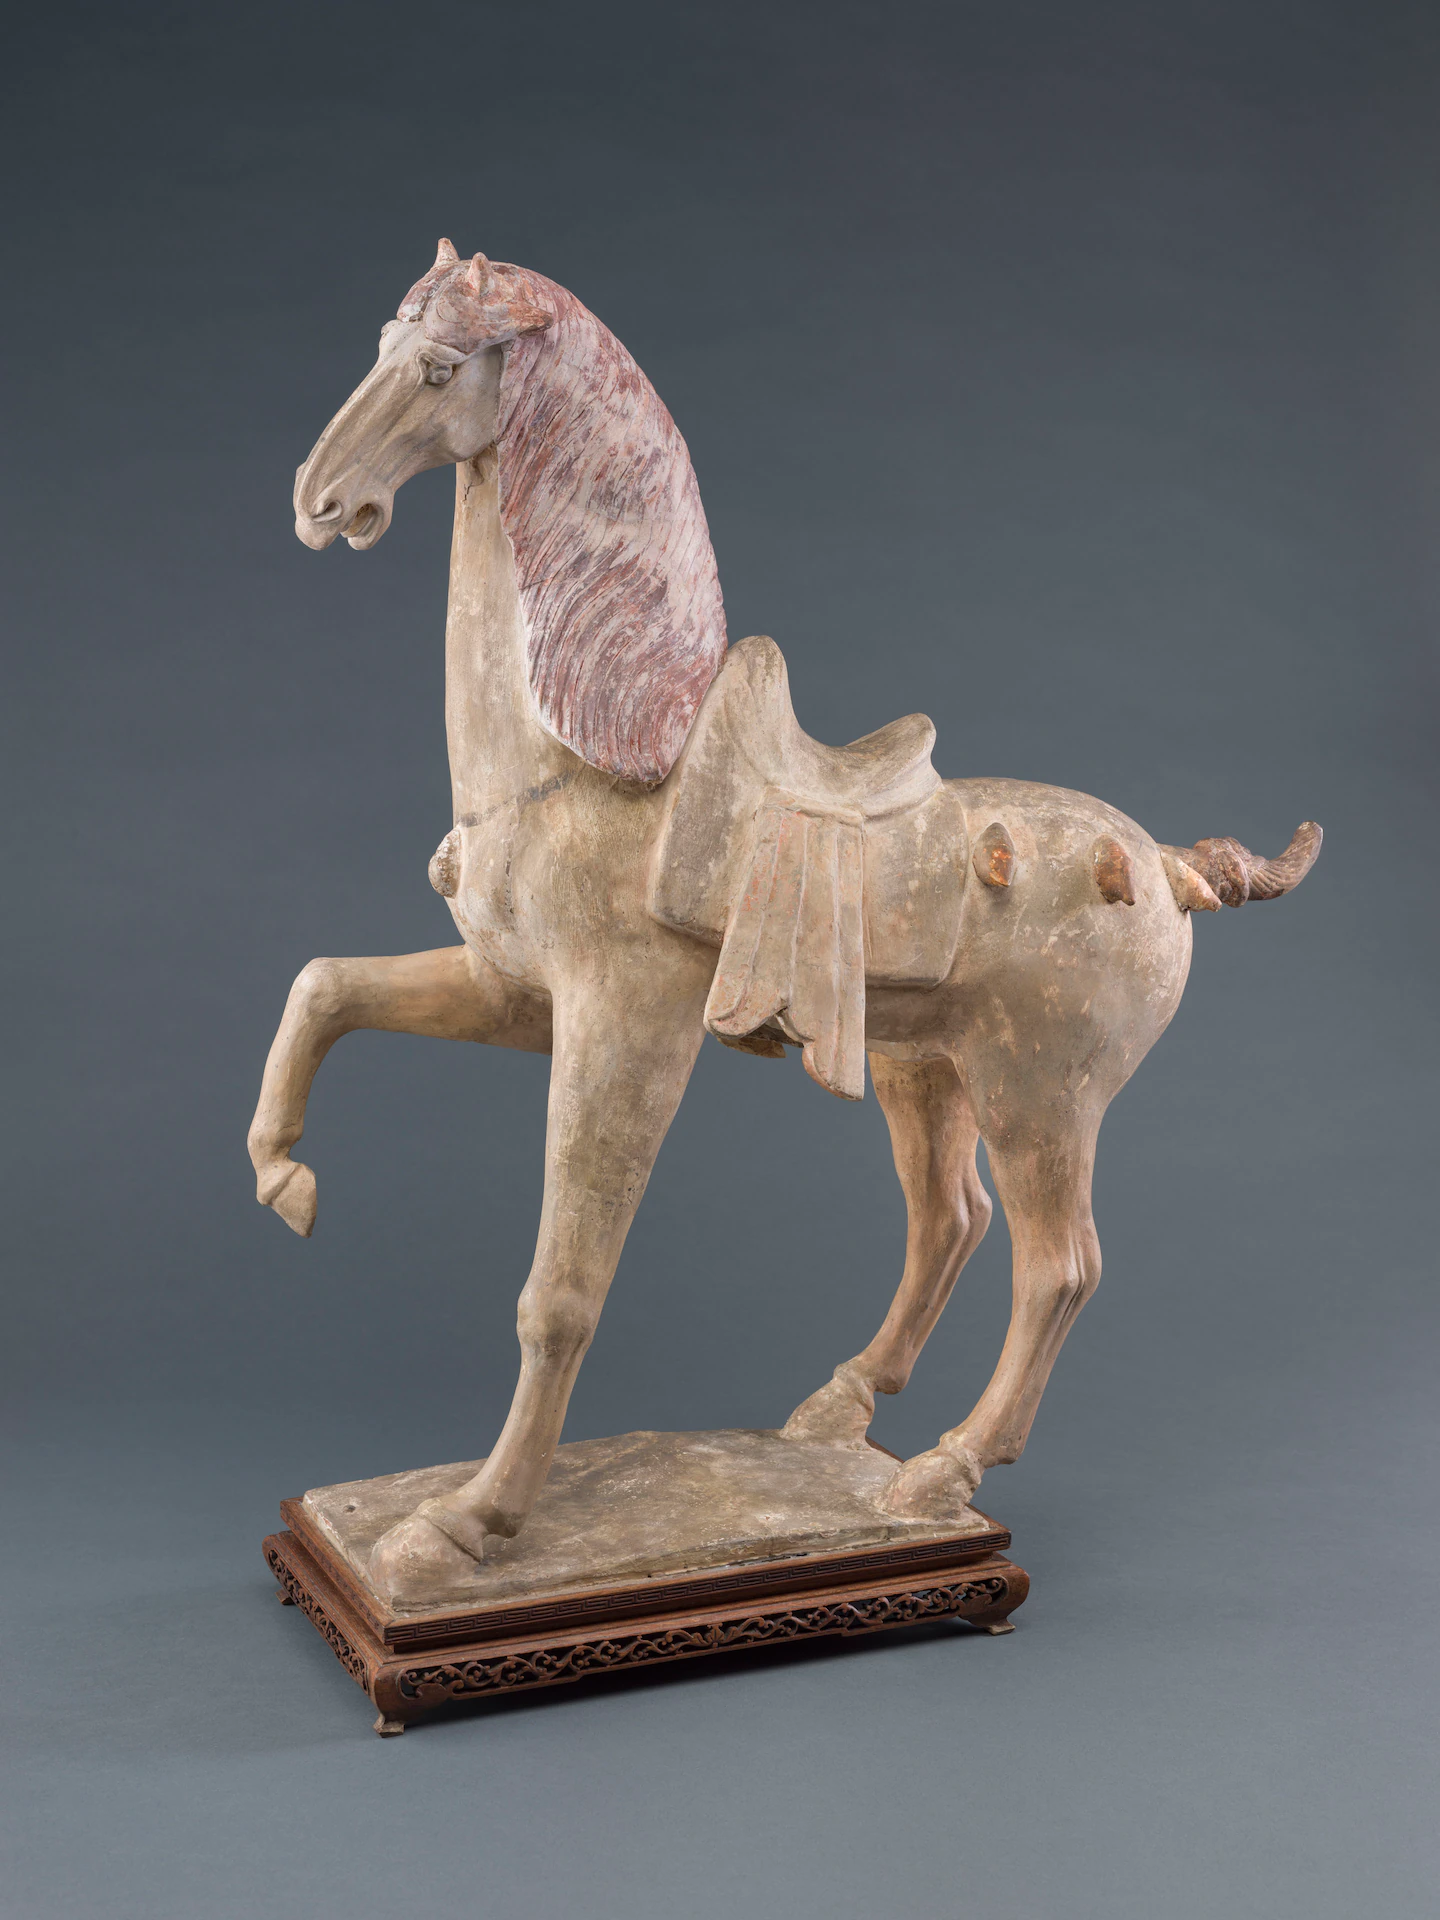 L'arte incontra la scienza nell'analisi di un'antica statua di cavallo danzante